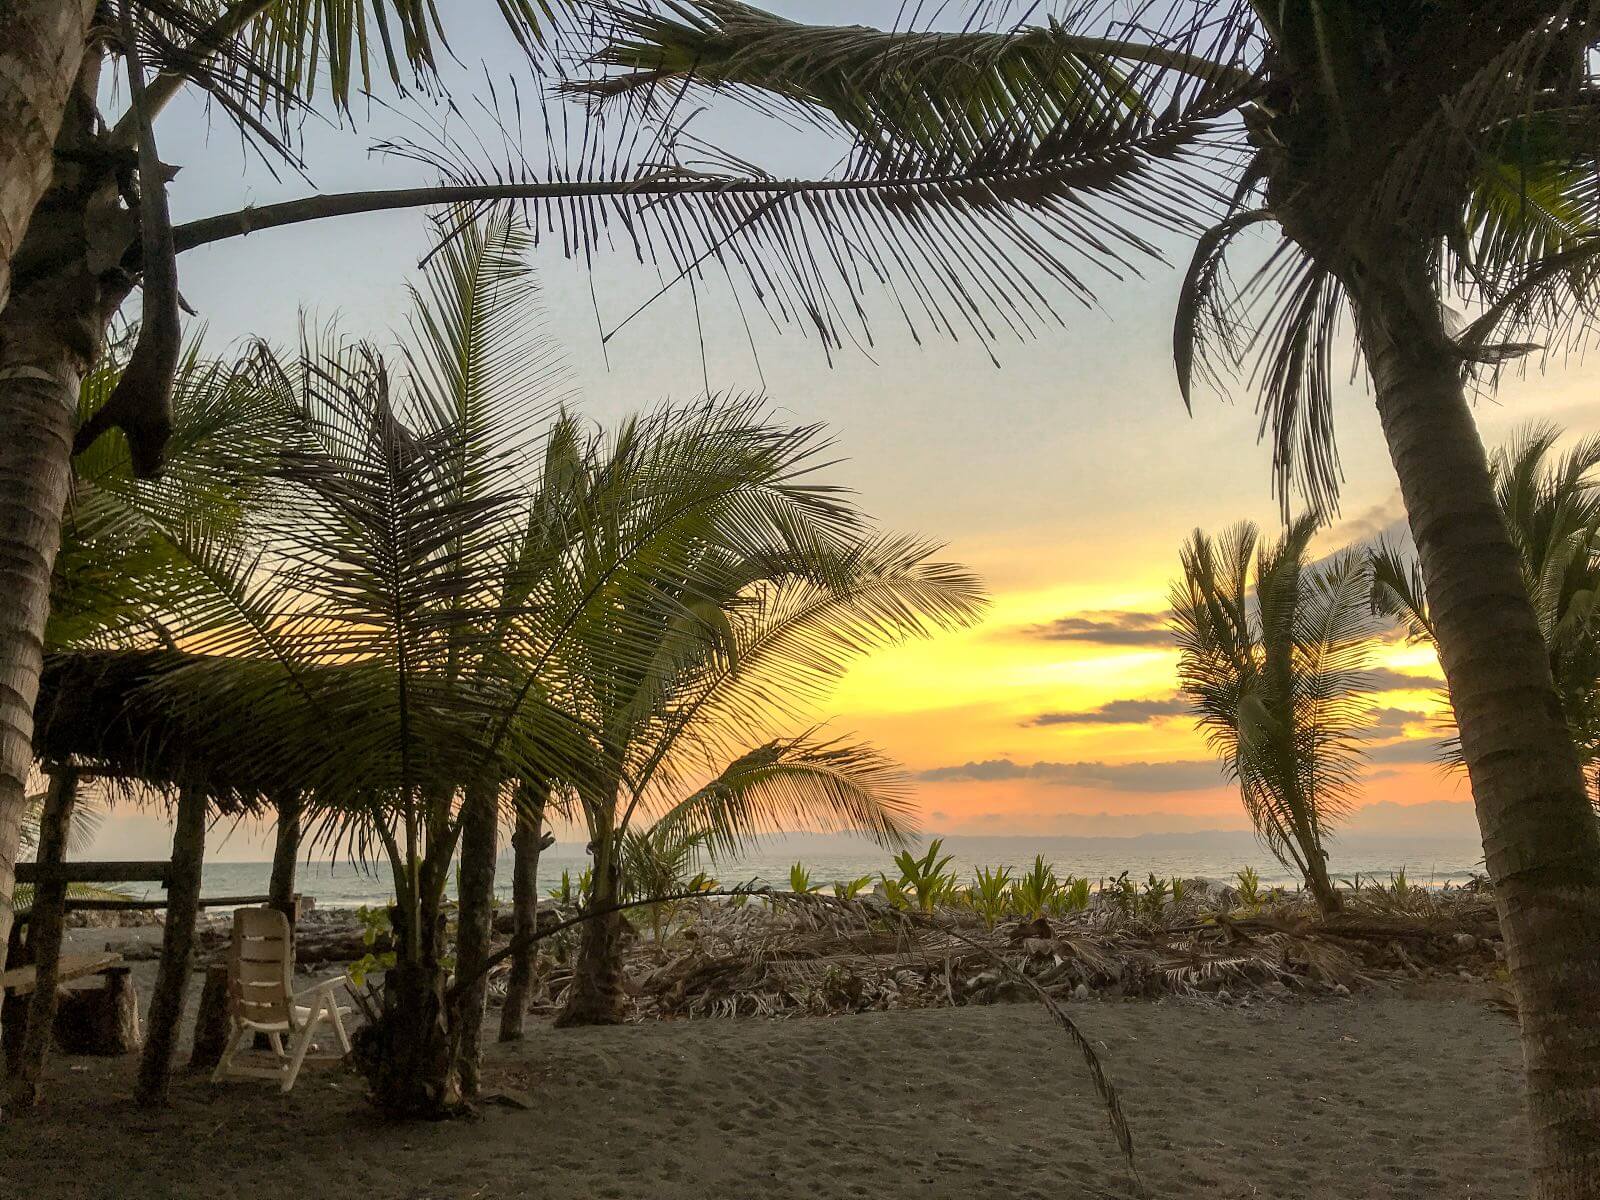 Sunset on Playa Zancudo